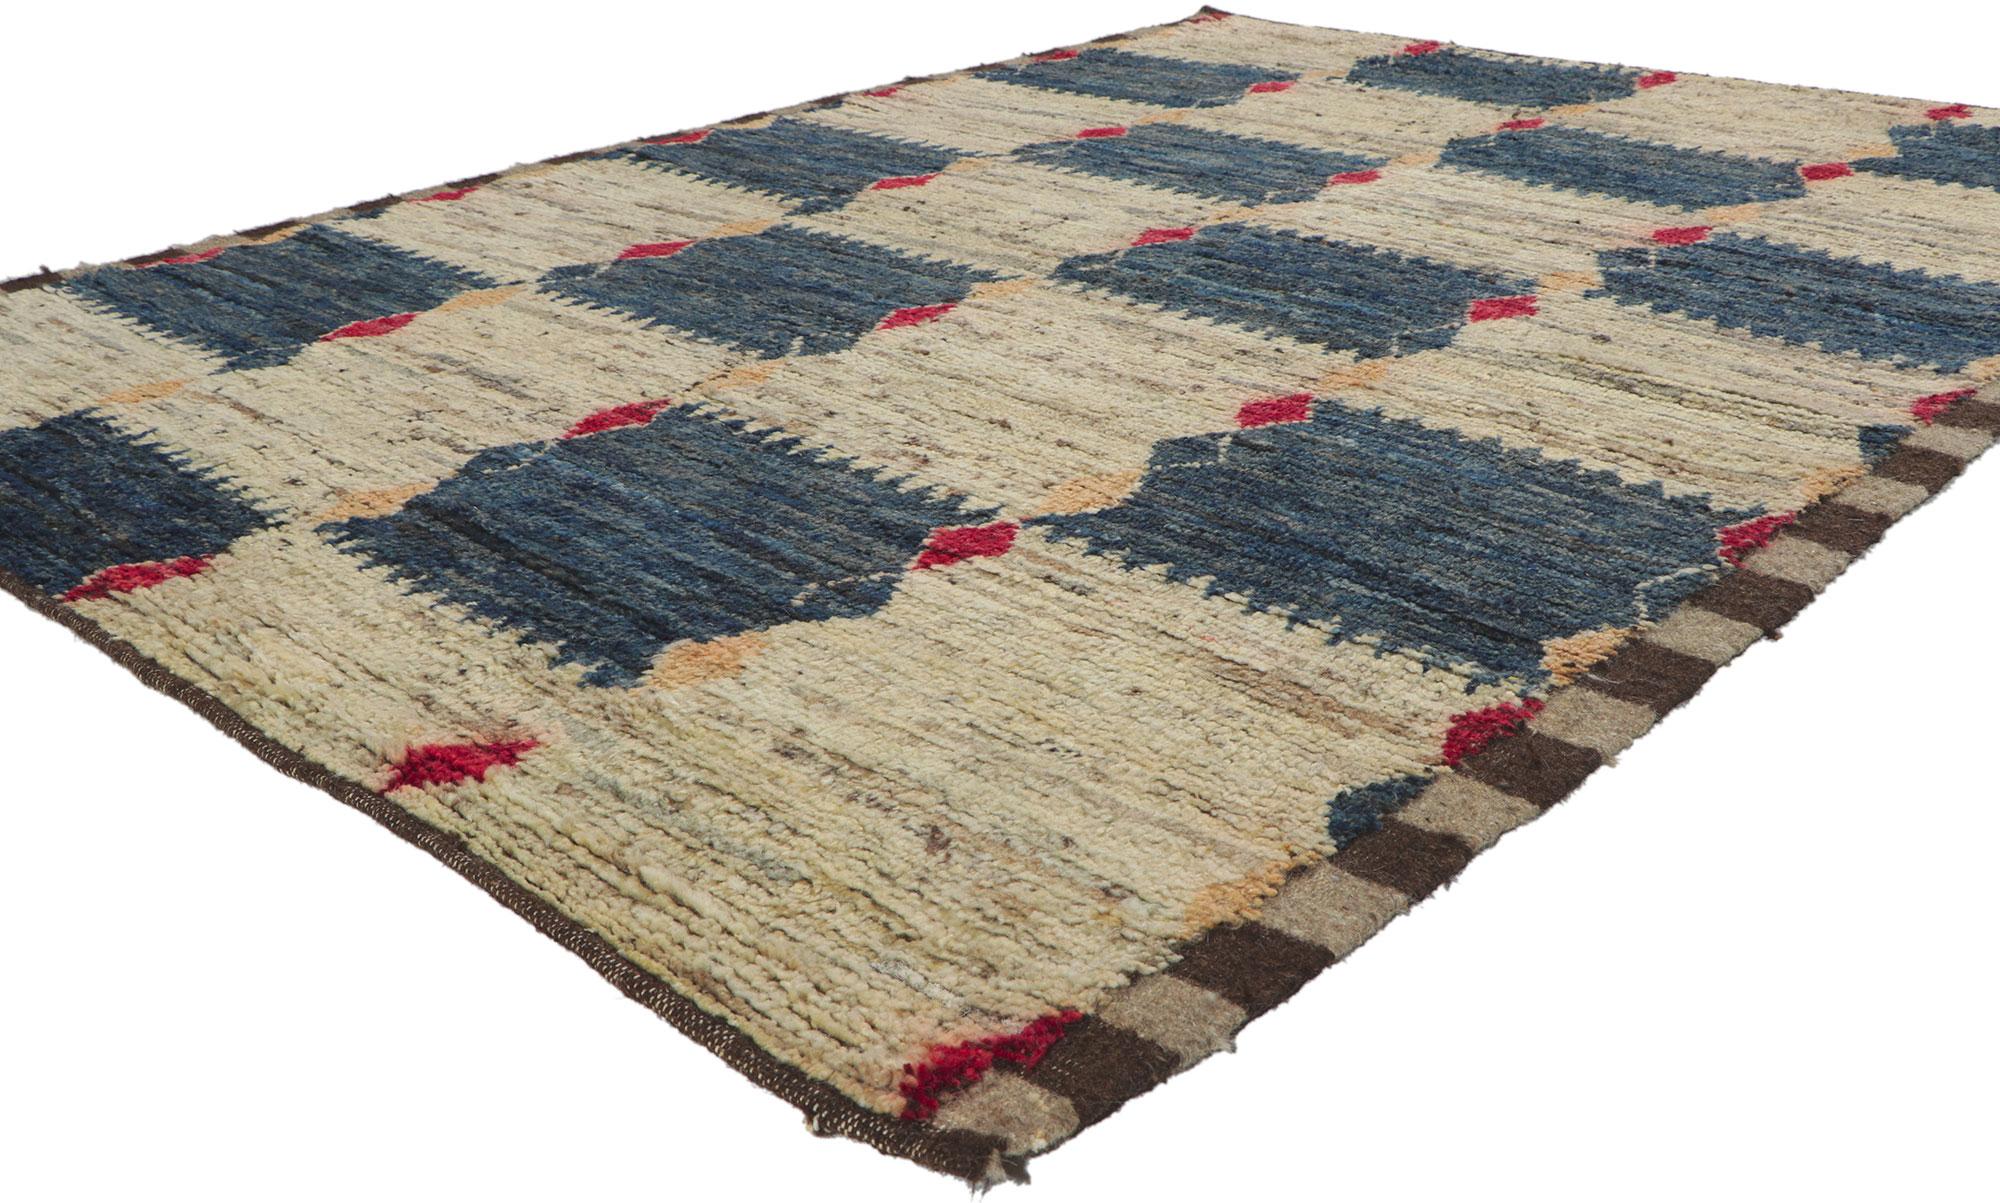 80822 Moderner karierter marokkanischer Teppich, 05'10 x 07'09.
Midcentury Modern trifft auf Stammeszauber in diesem handgeknüpften Wollteppich im marokkanischen Stil. Das Schachbrettmuster und die erdige Farbgebung, die in dieses Stück eingewebt